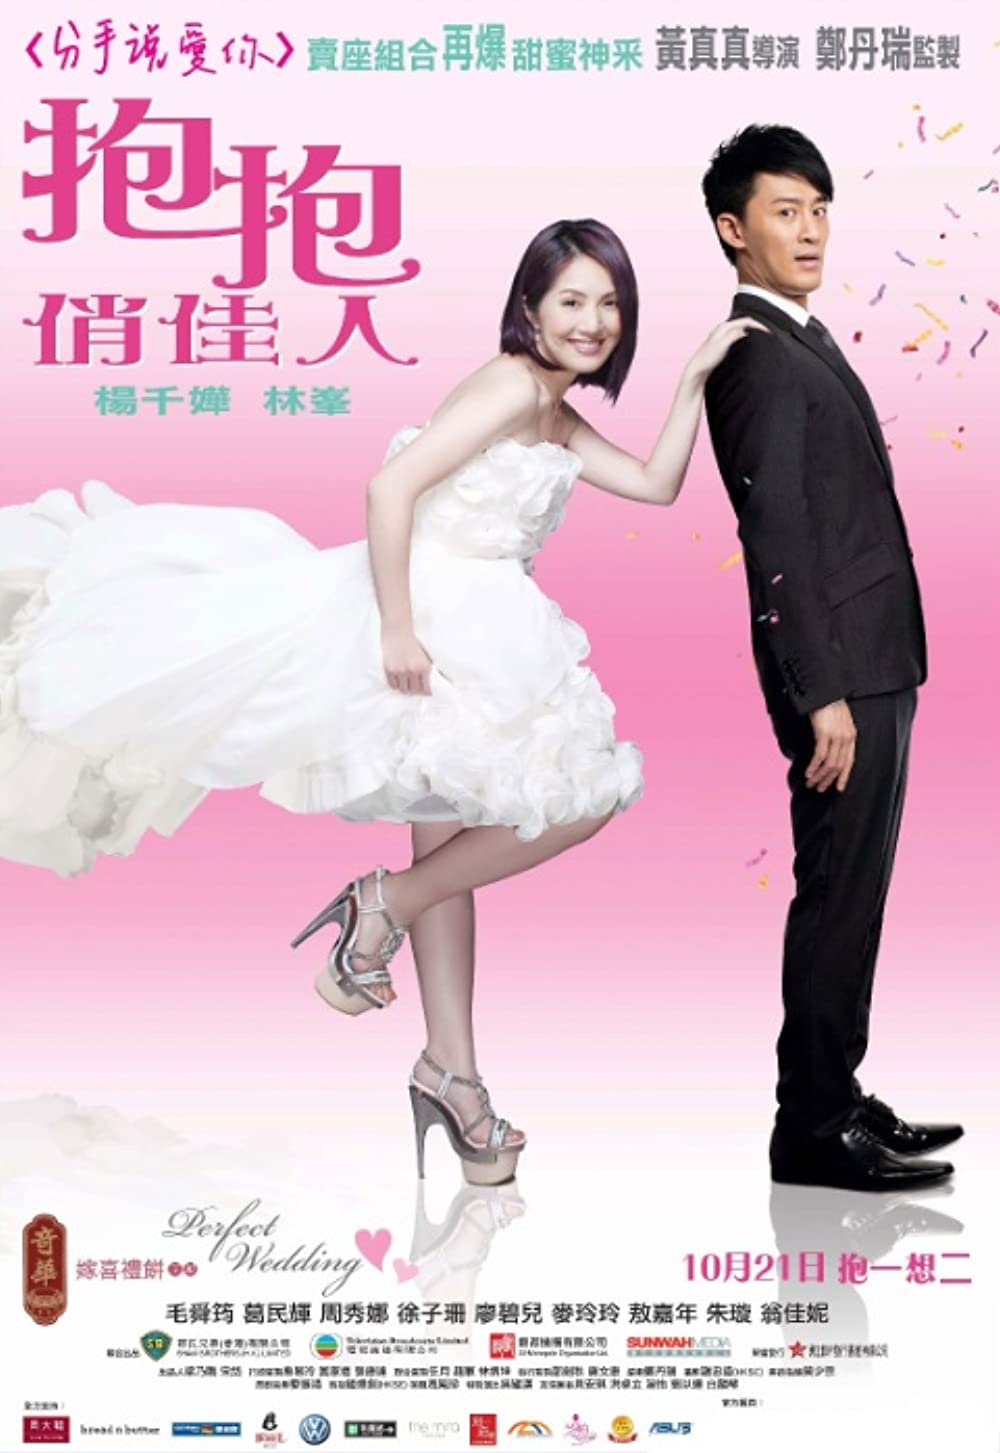 Download Po po chiu kai yan Movie | Po Po Chiu Kai Yan Divx